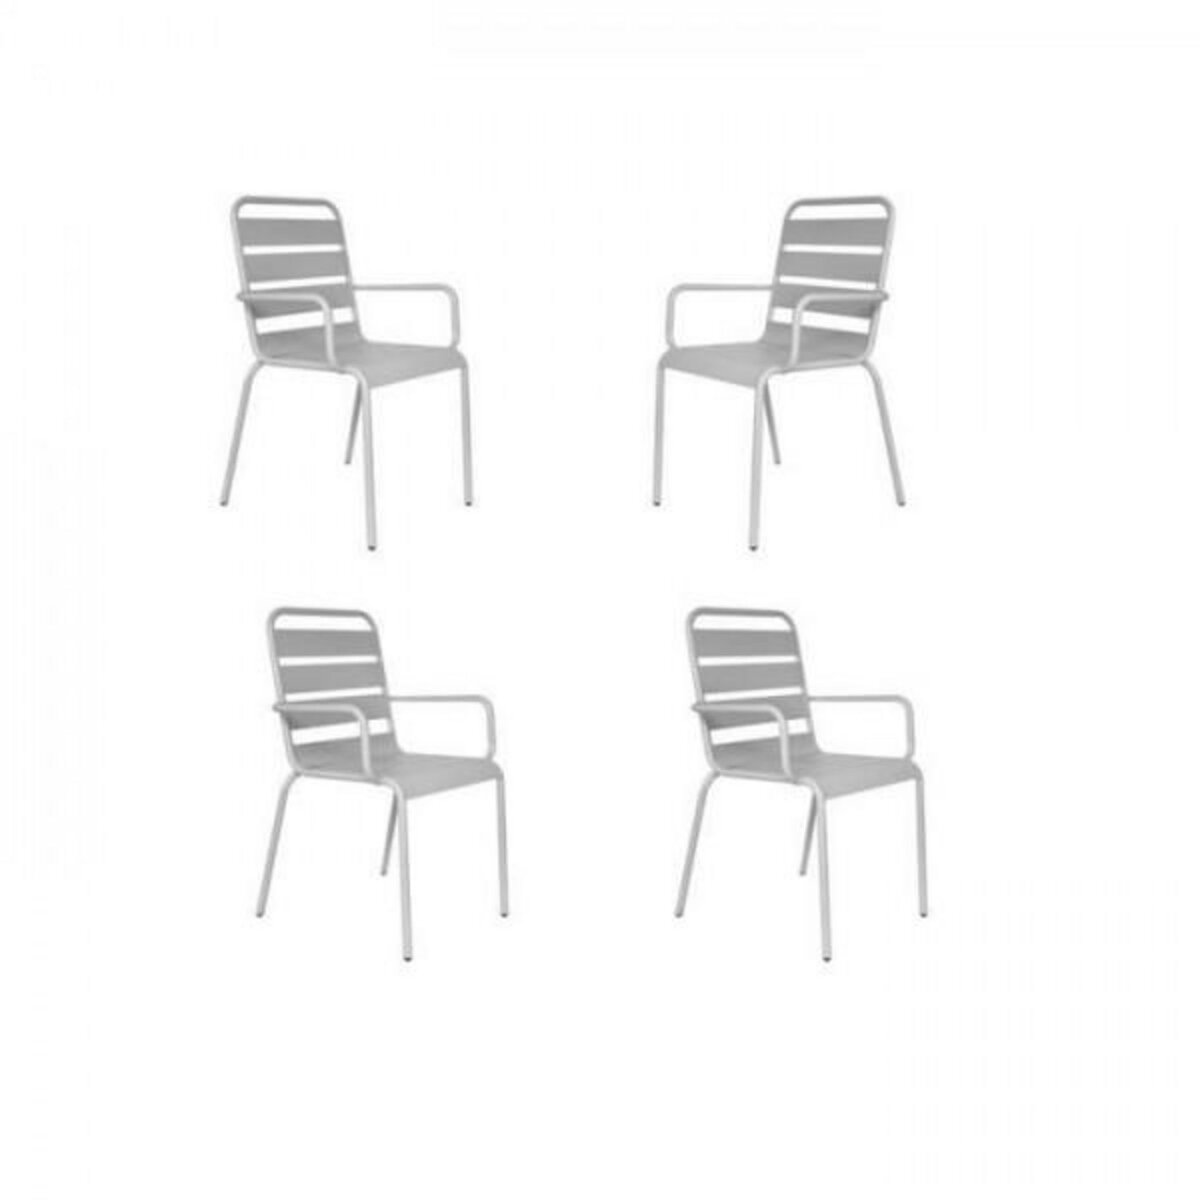 MARKET24 Lot de 4 fauteuils de jardin - Acier - Gris